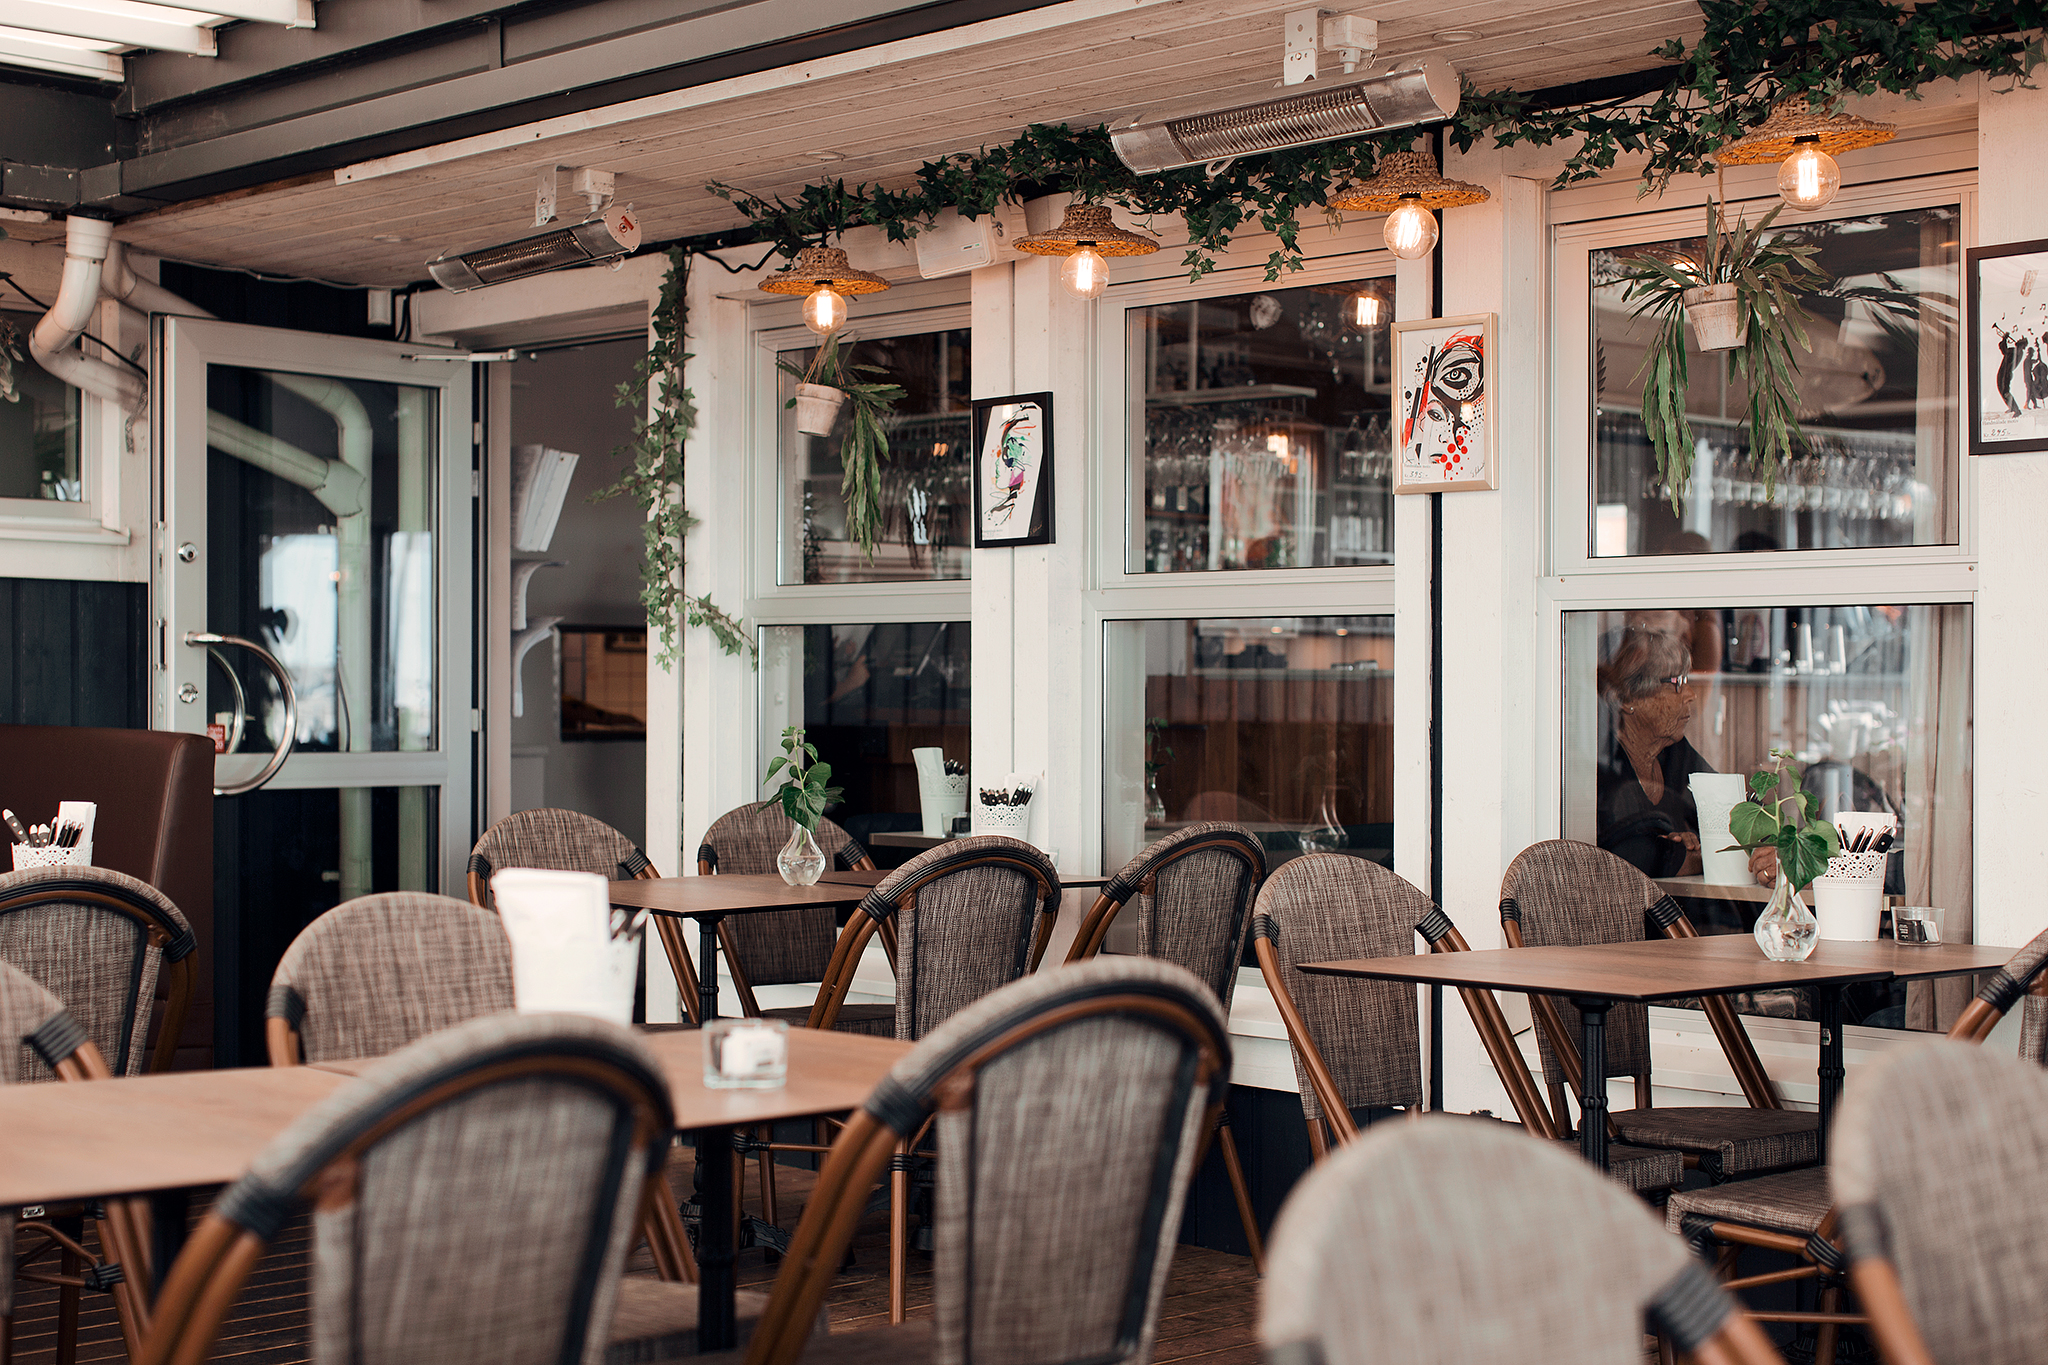 Restaurang Marinan i Ystad